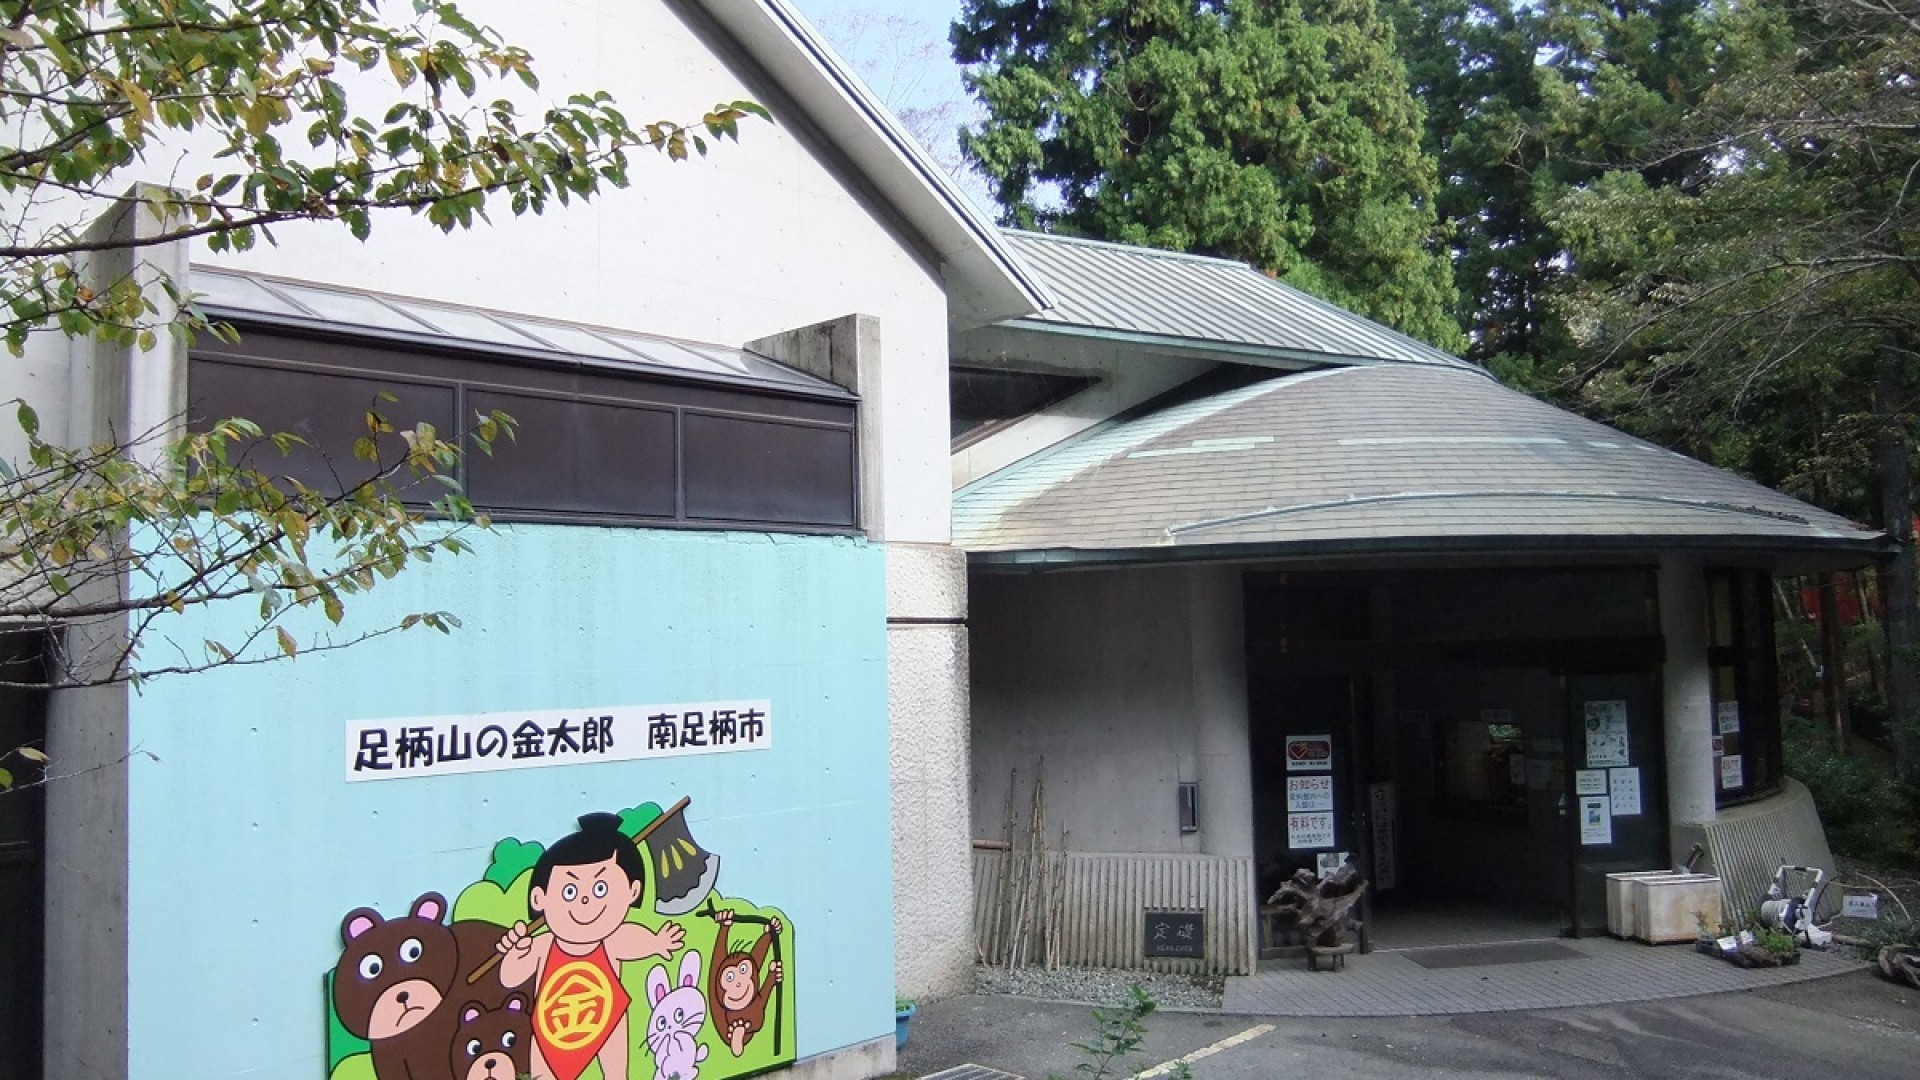 Minamiashigara Volksmuseum